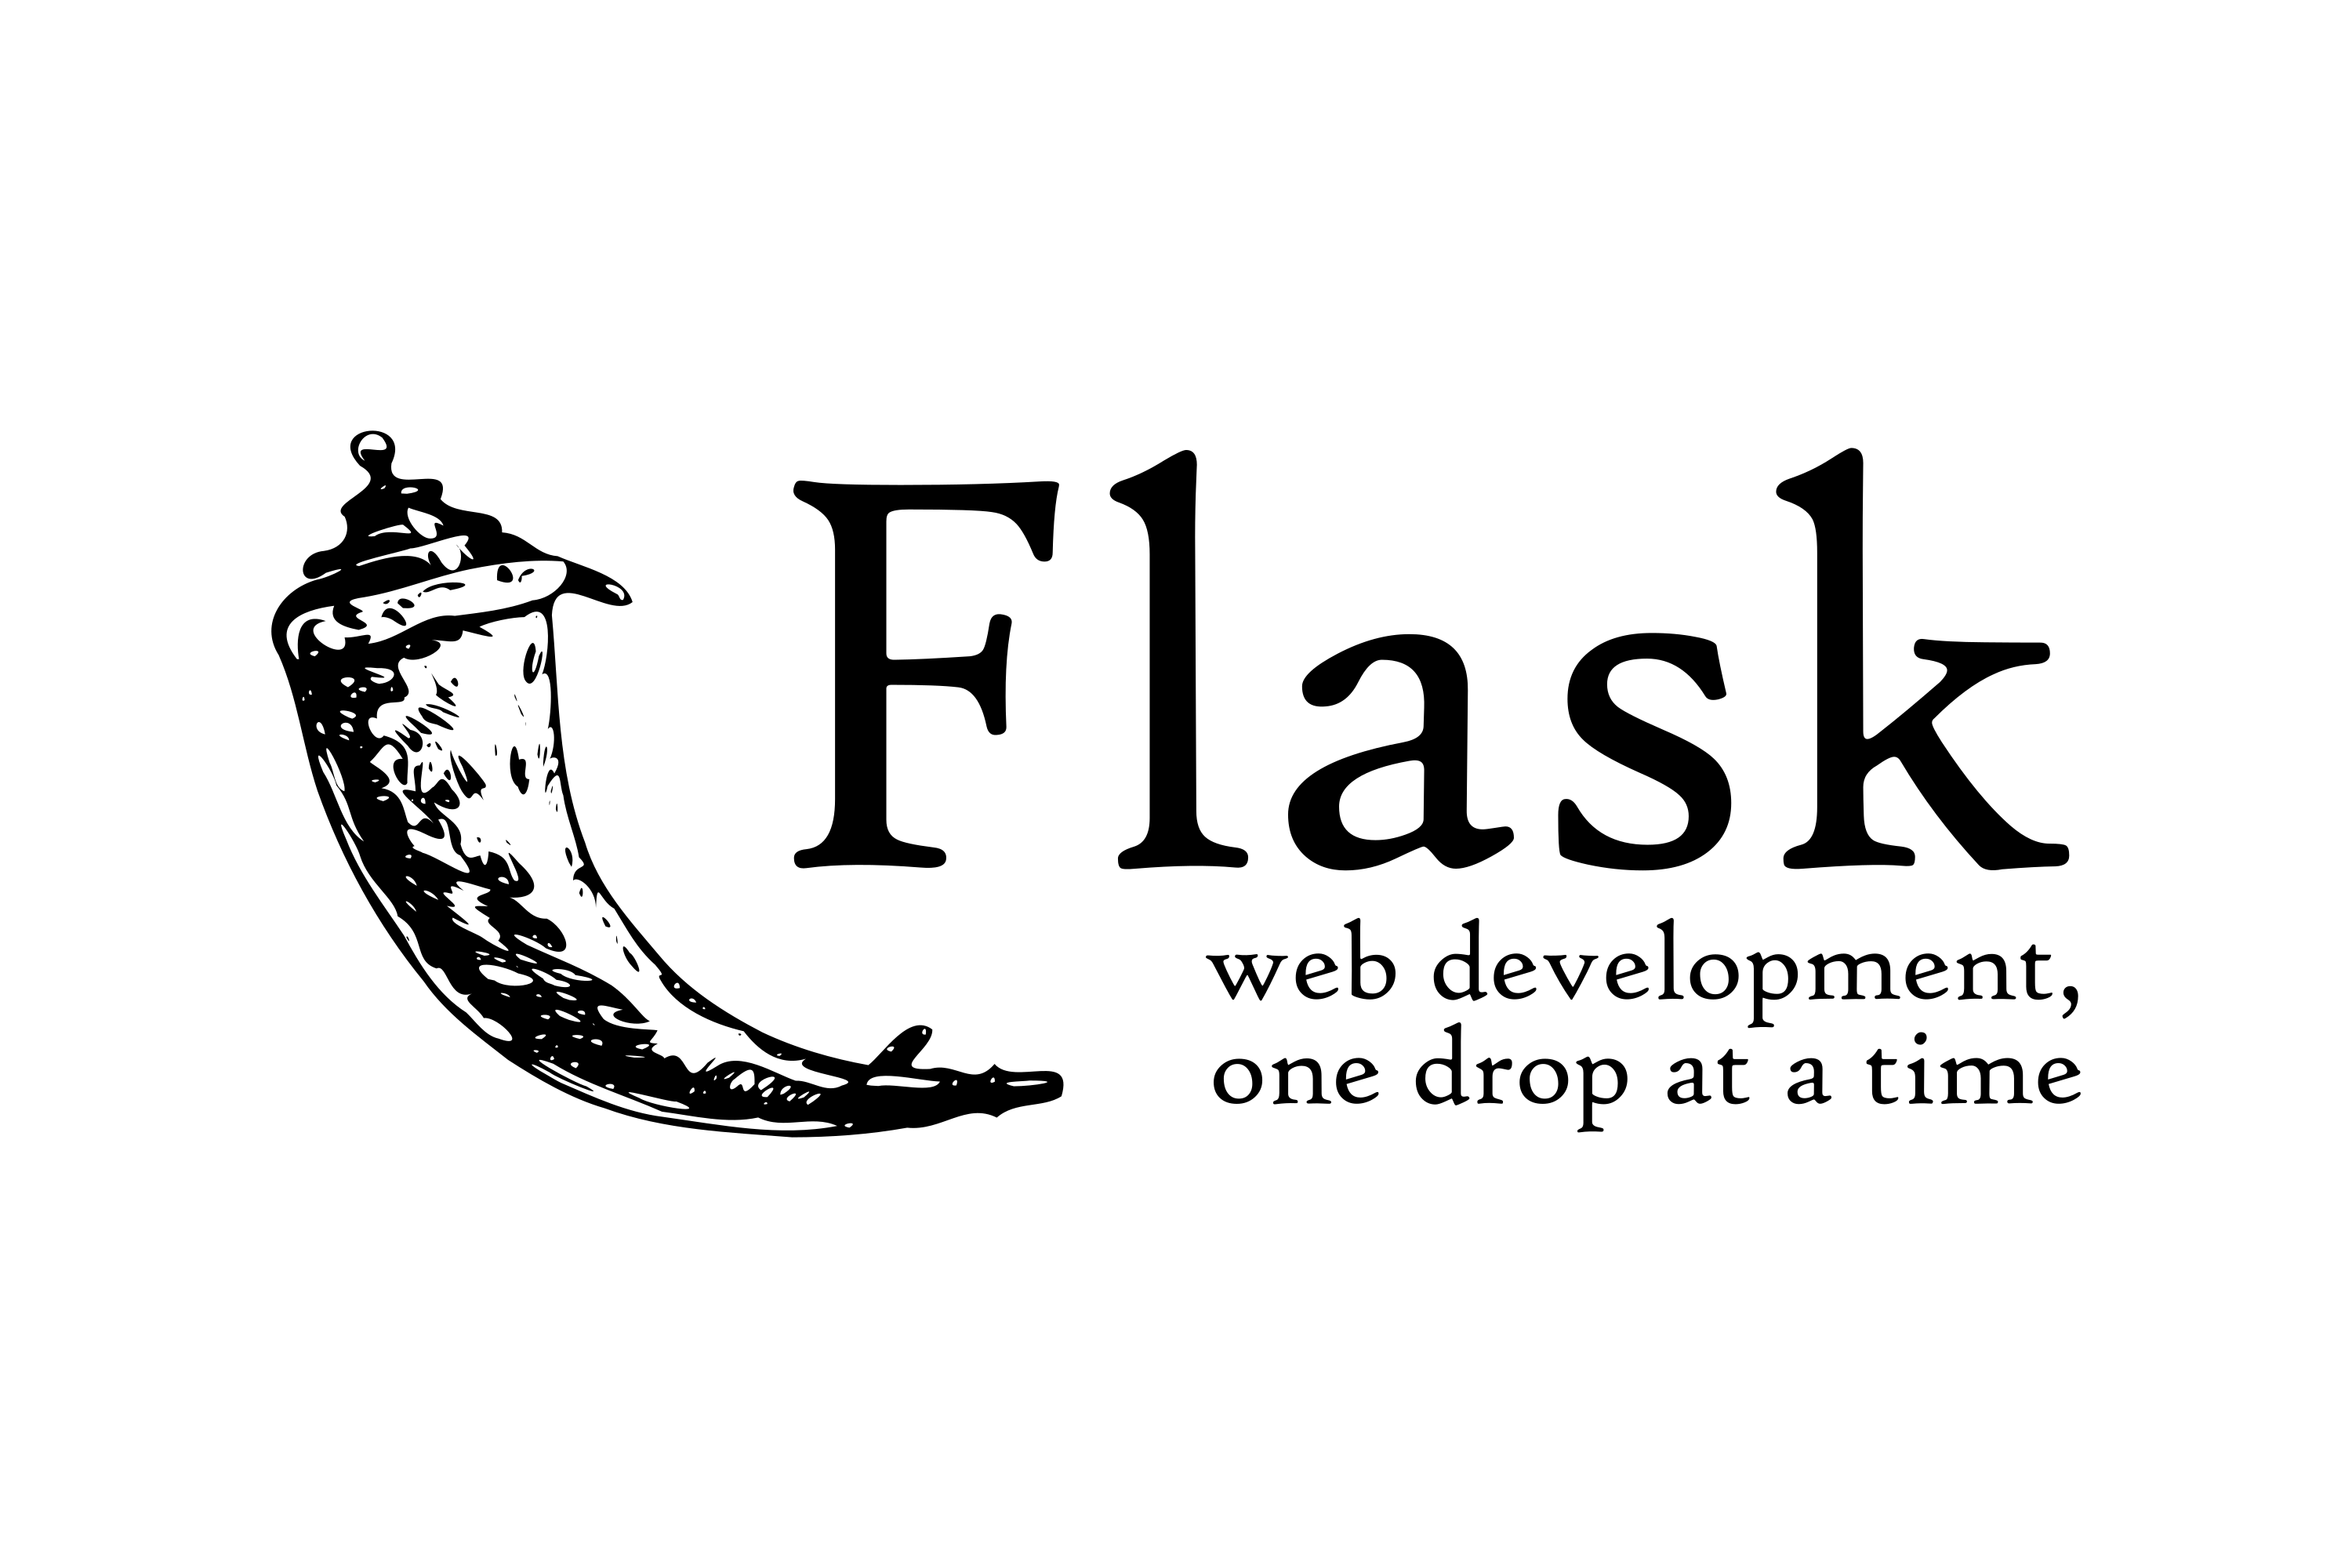 Download Flask Logo in SVG Vector or PNG File Format - Logo.wine